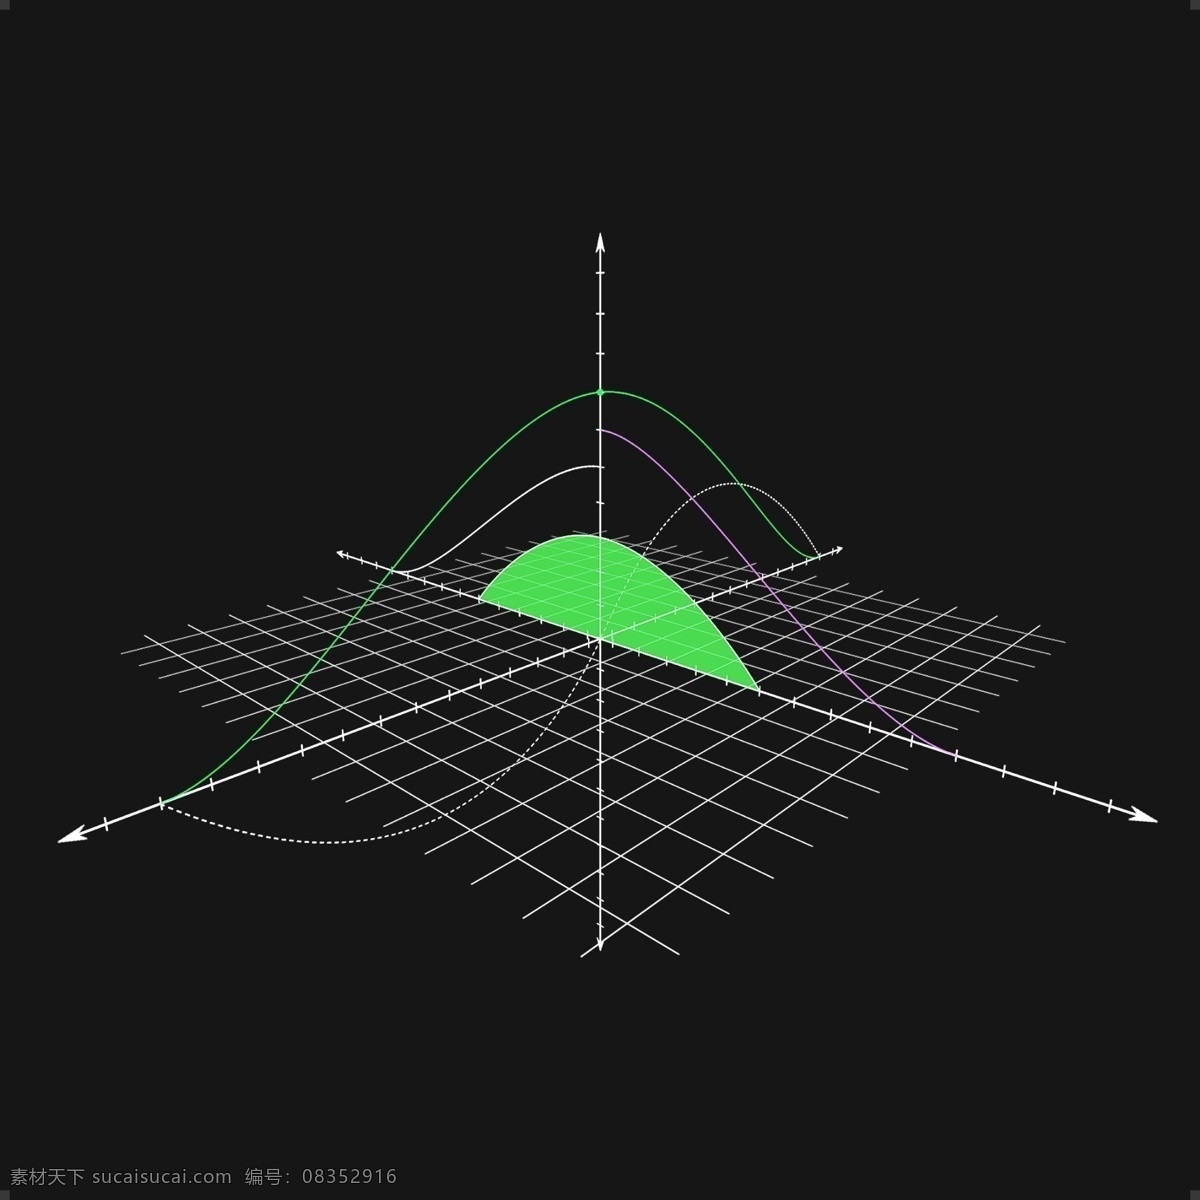 数学 集合 函数 图形 几何体 虚线 线框 透视 立体 角度 方程 体积 面积 度数 线条 圆弧 计算 科学 课堂